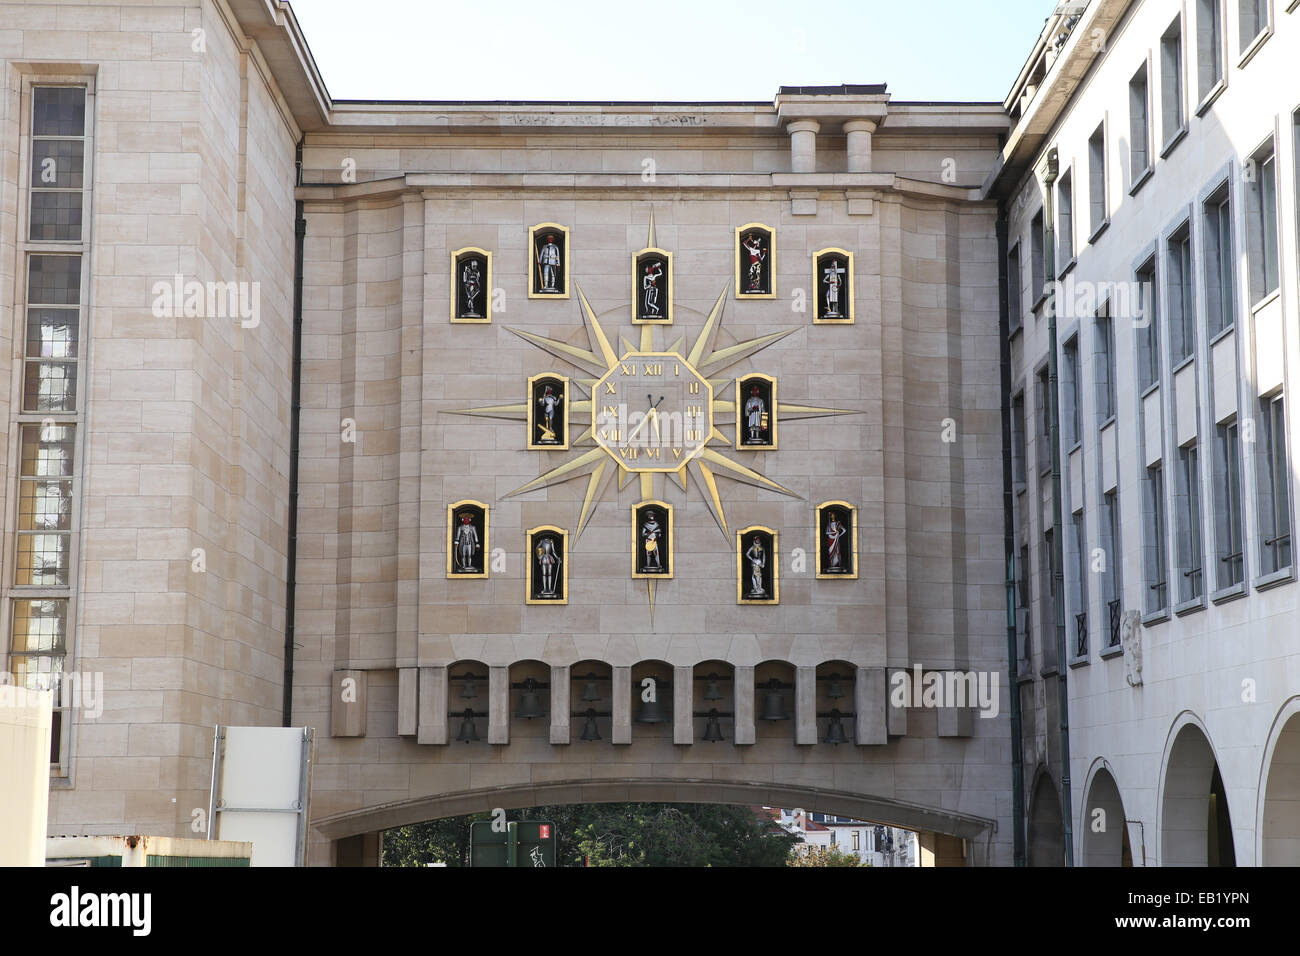 Horloge analogique extérieure mur bâtiment bruxelles belgique europe Banque D'Images